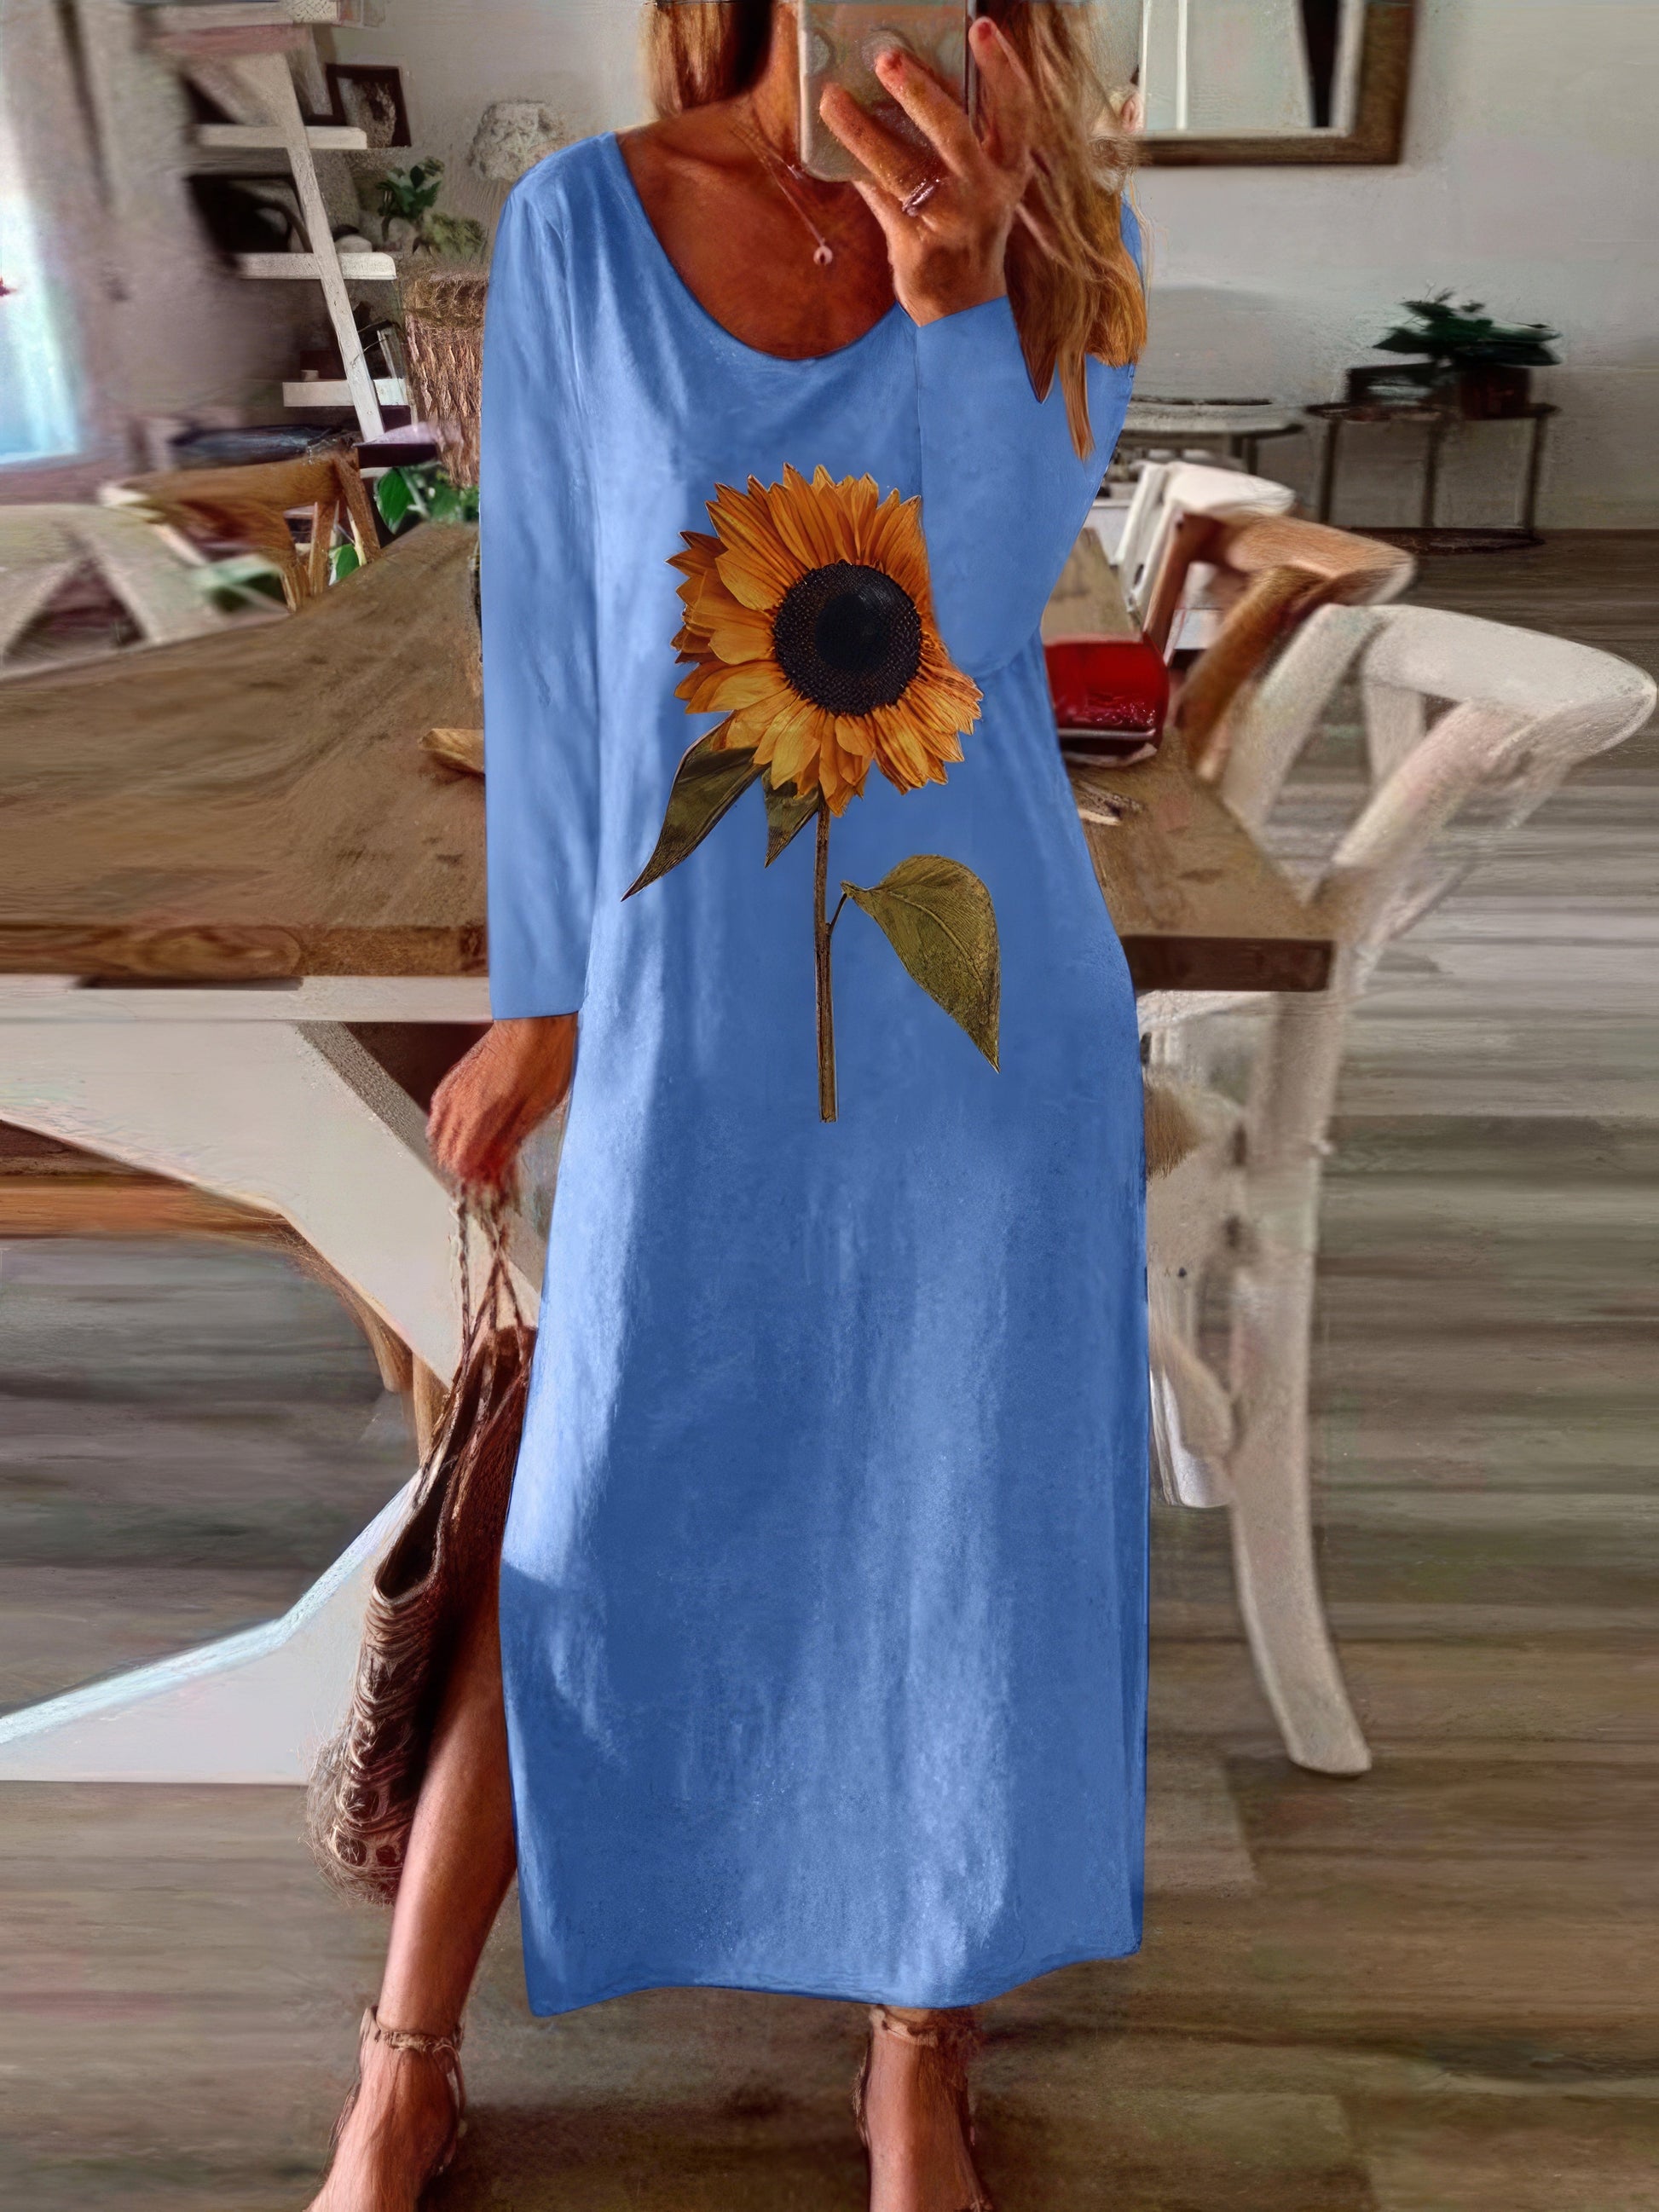 Maxi Dresses - Sunflower Print Slit Long Sleeve Dress - MsDressly